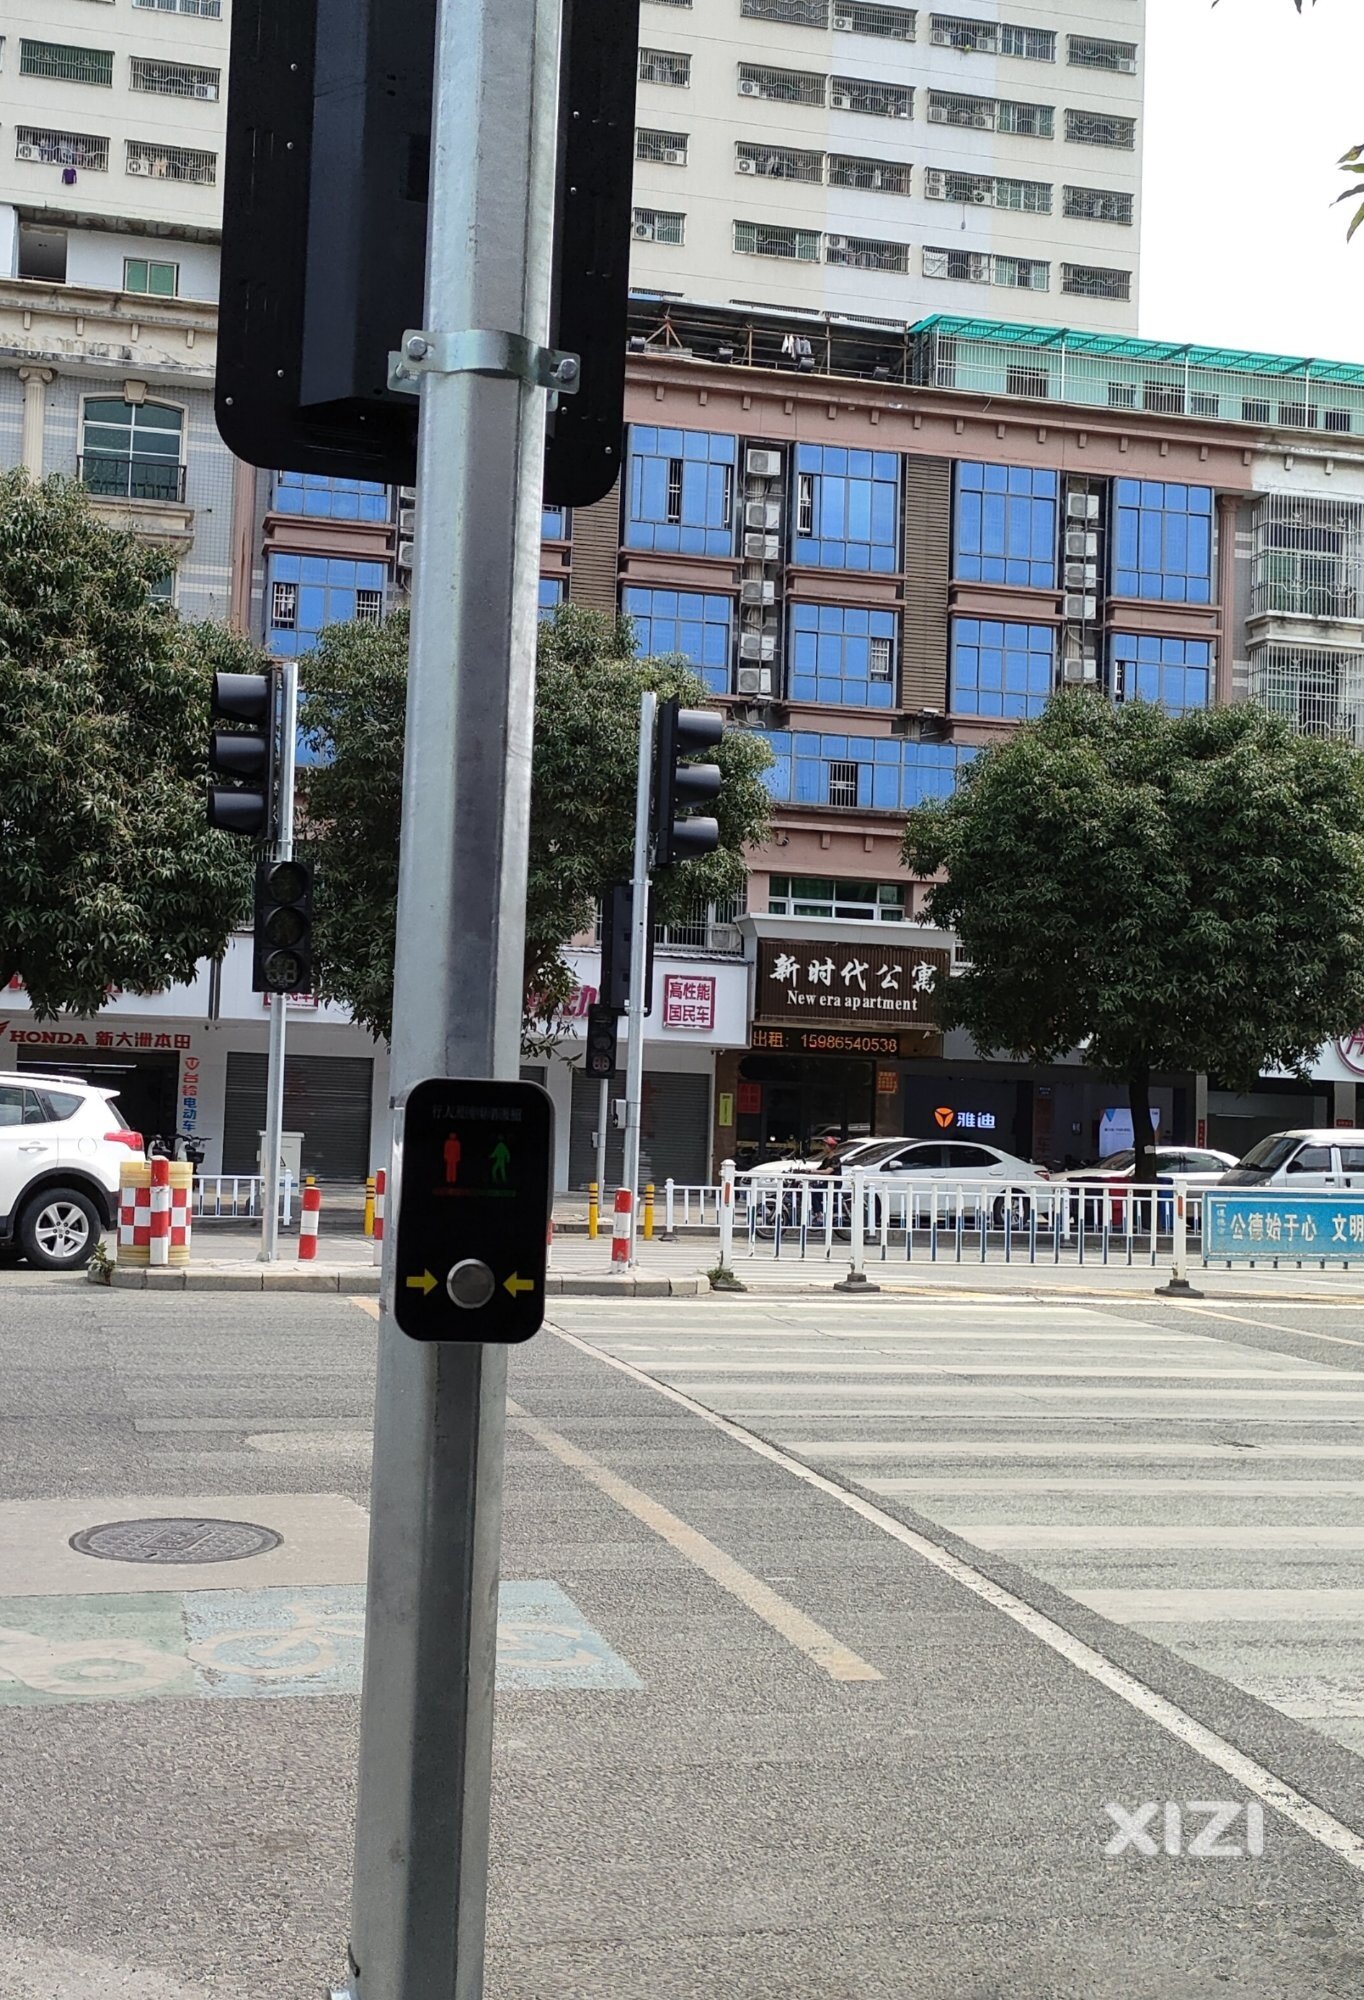 惠东首个行人过街按钮